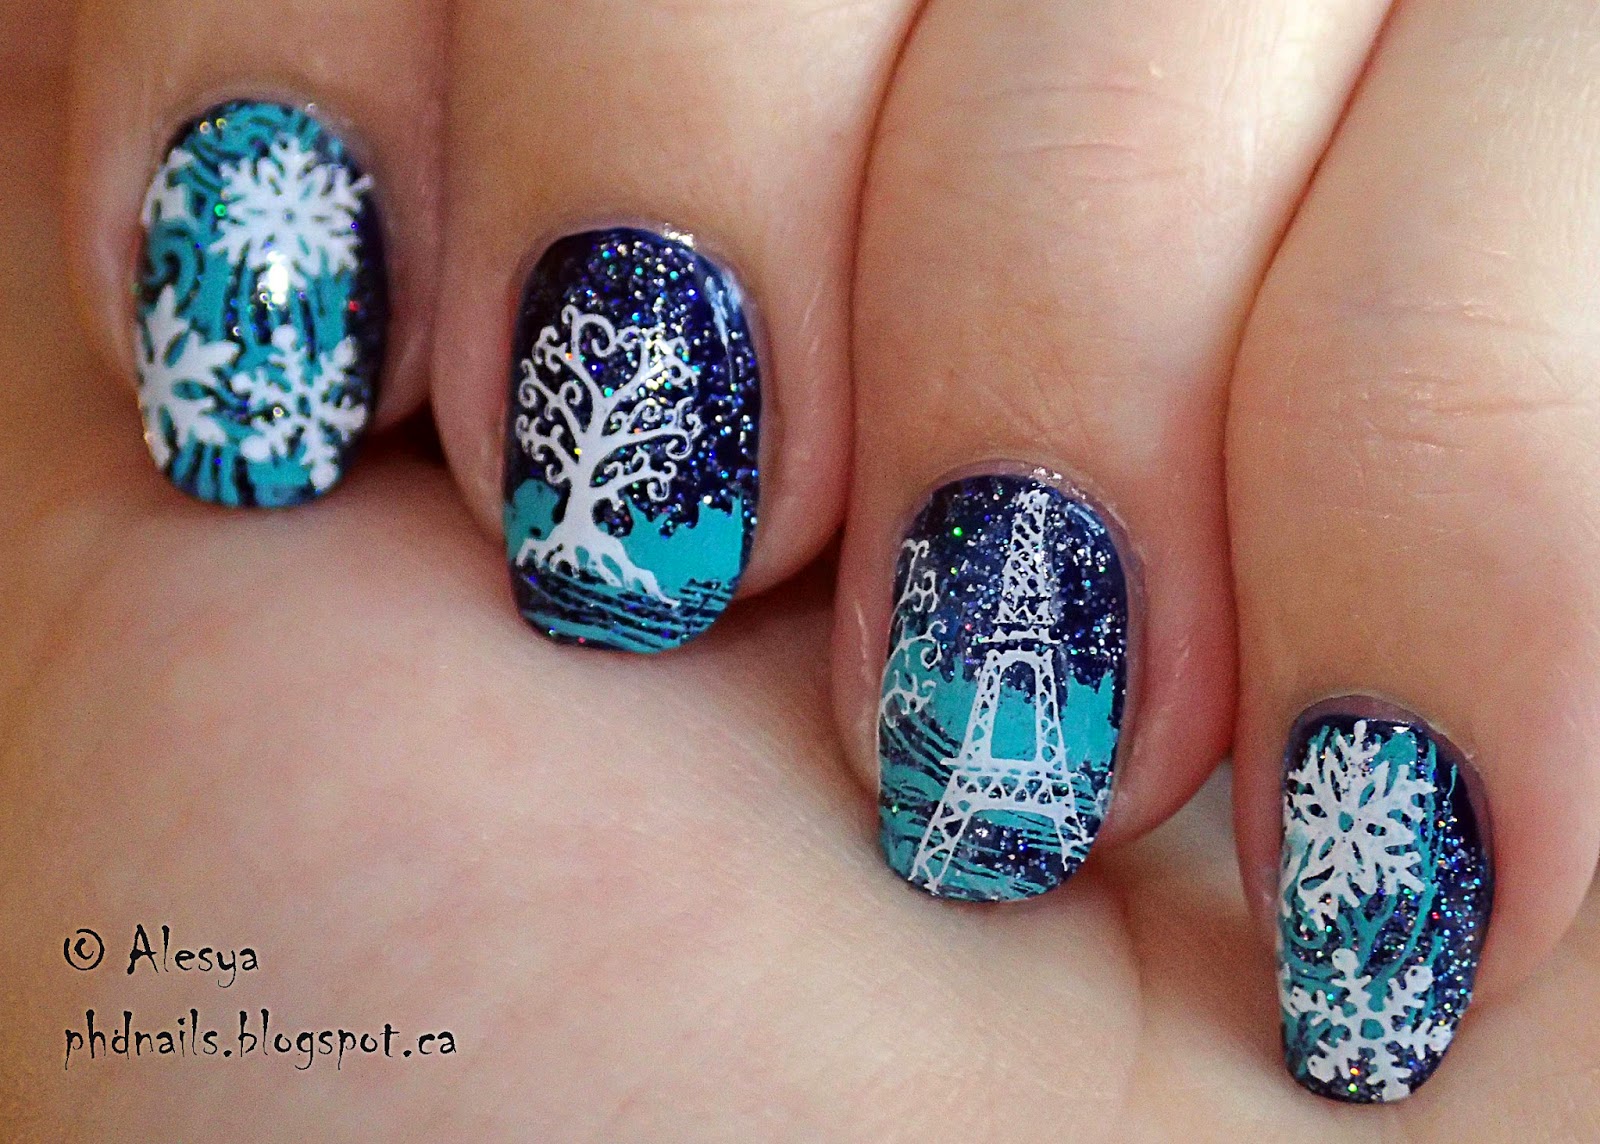 PhD nails: Winter nail art challenge: Snow/snowflakes